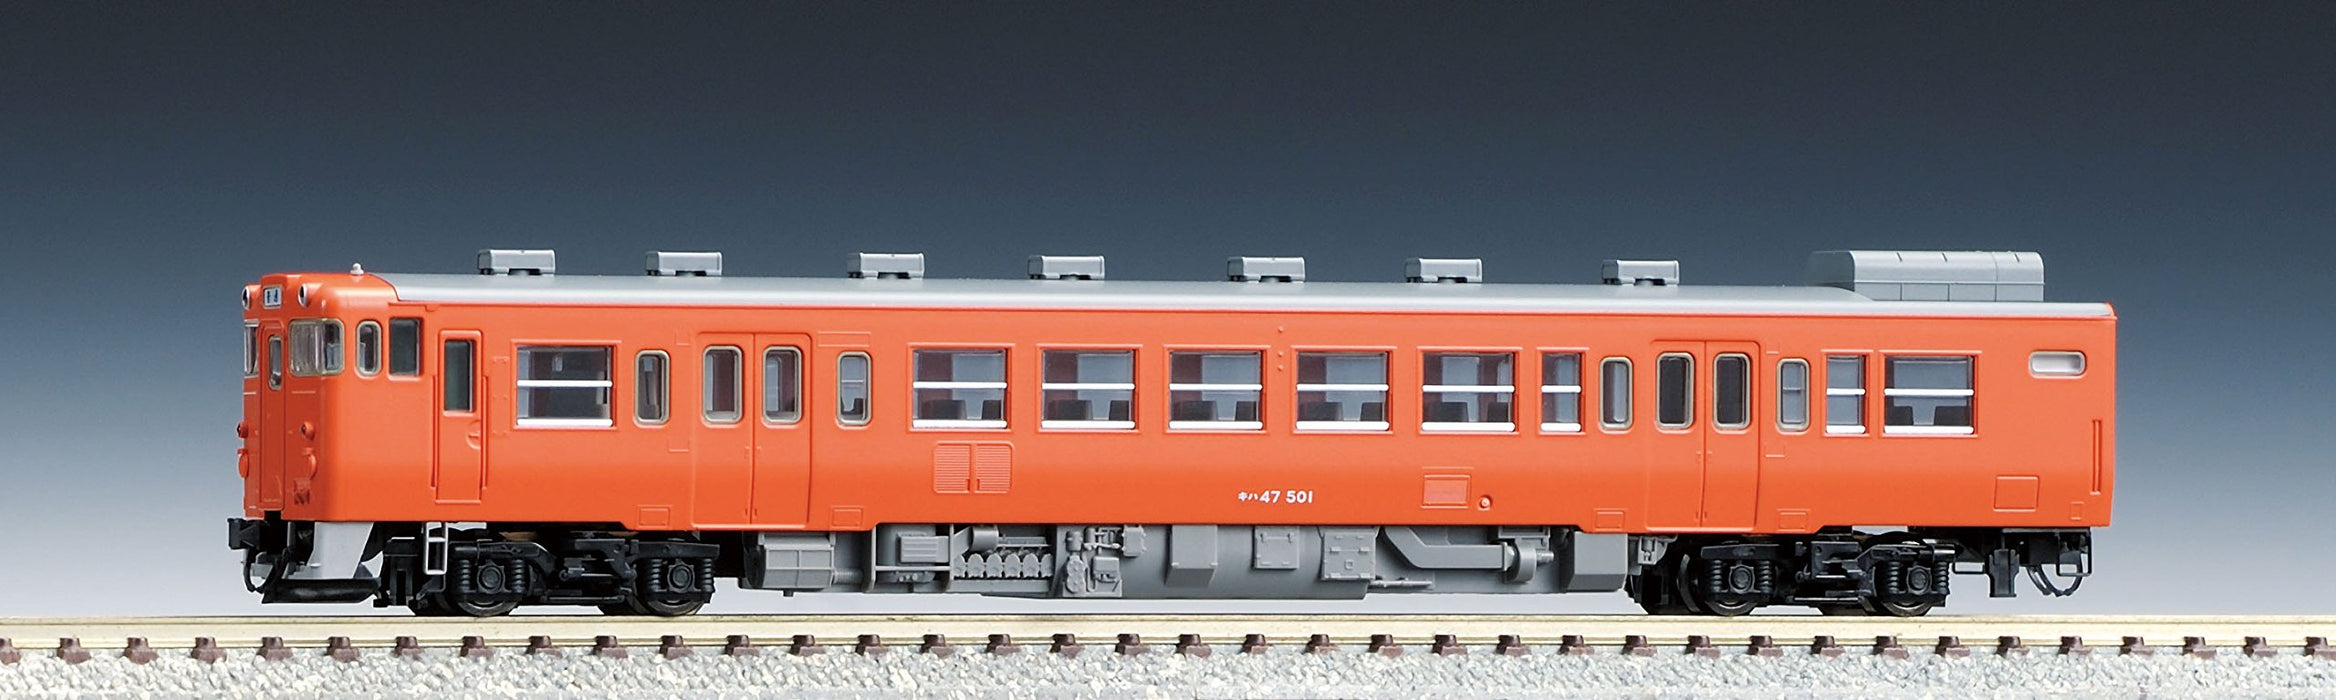 Tomytec Tomix N Gauge Kiha47 500 Type Set 92165 Diesel Railway Model Car